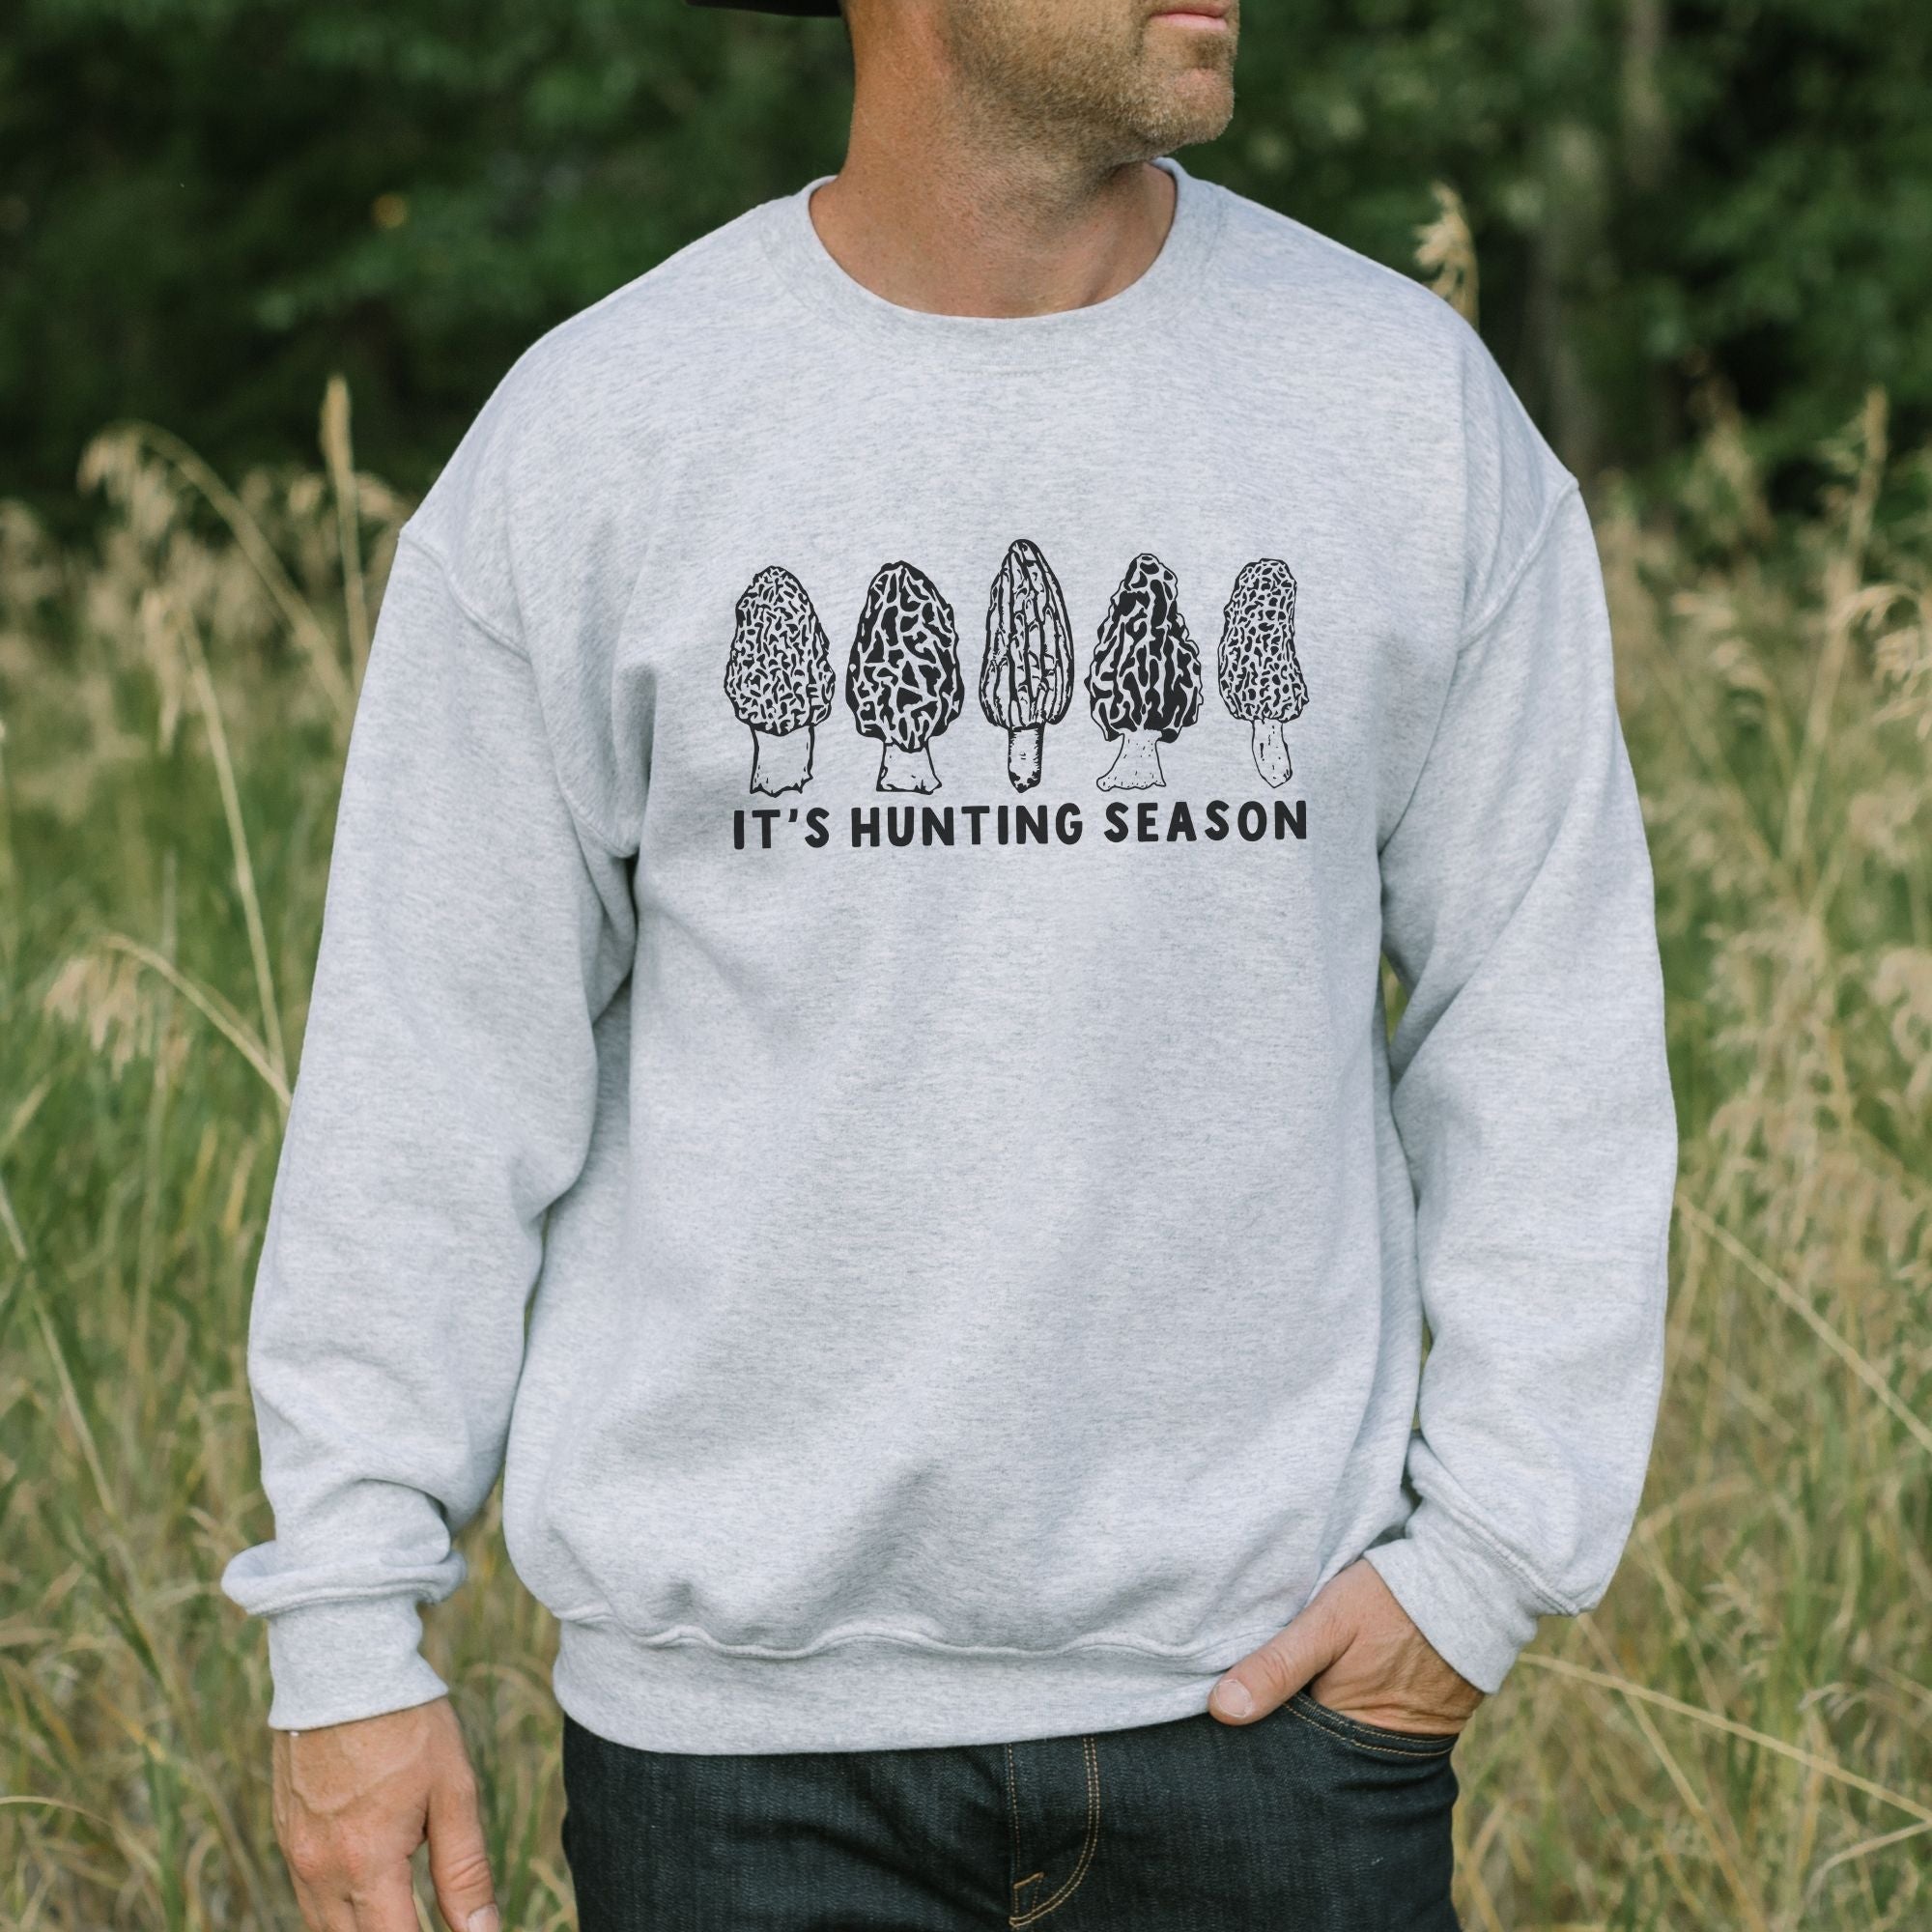 Hunting Season Morel Mushroom Tshirt for Men and Women *UNISEX FIT*-Sweatshirts-208 Tees Wholesale, Idaho